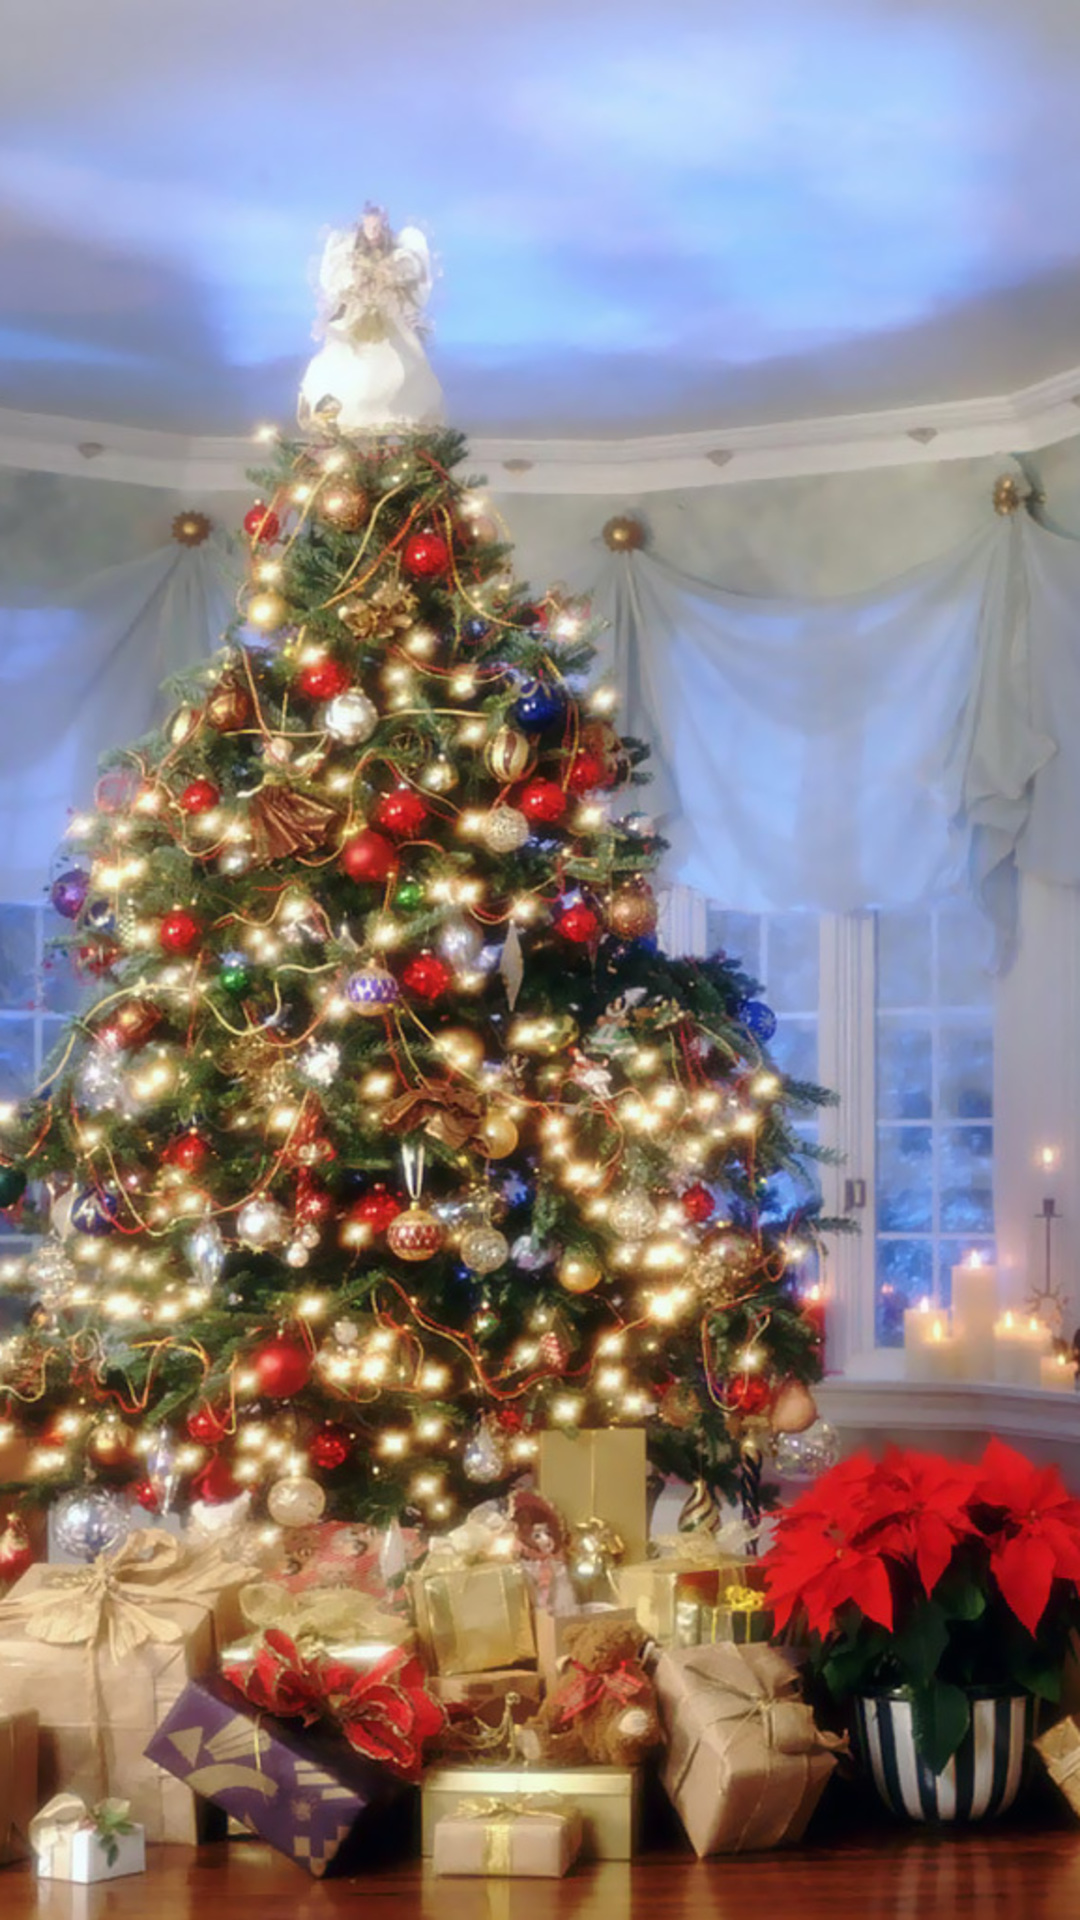 navidad fondos de pantalla hd iphone,árbol de navidad,decoración navideña,navidad,decoración navideña,árbol